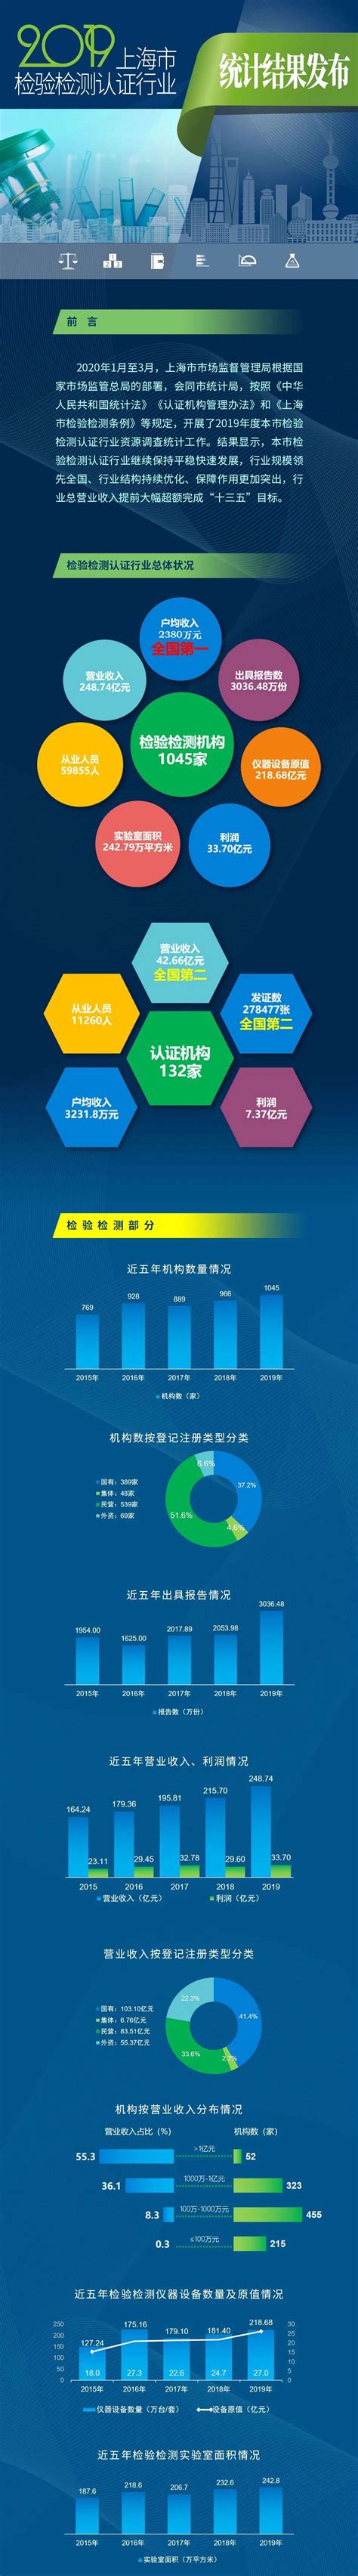 291.4亿元！上海检验检测认证行业规模领先全国